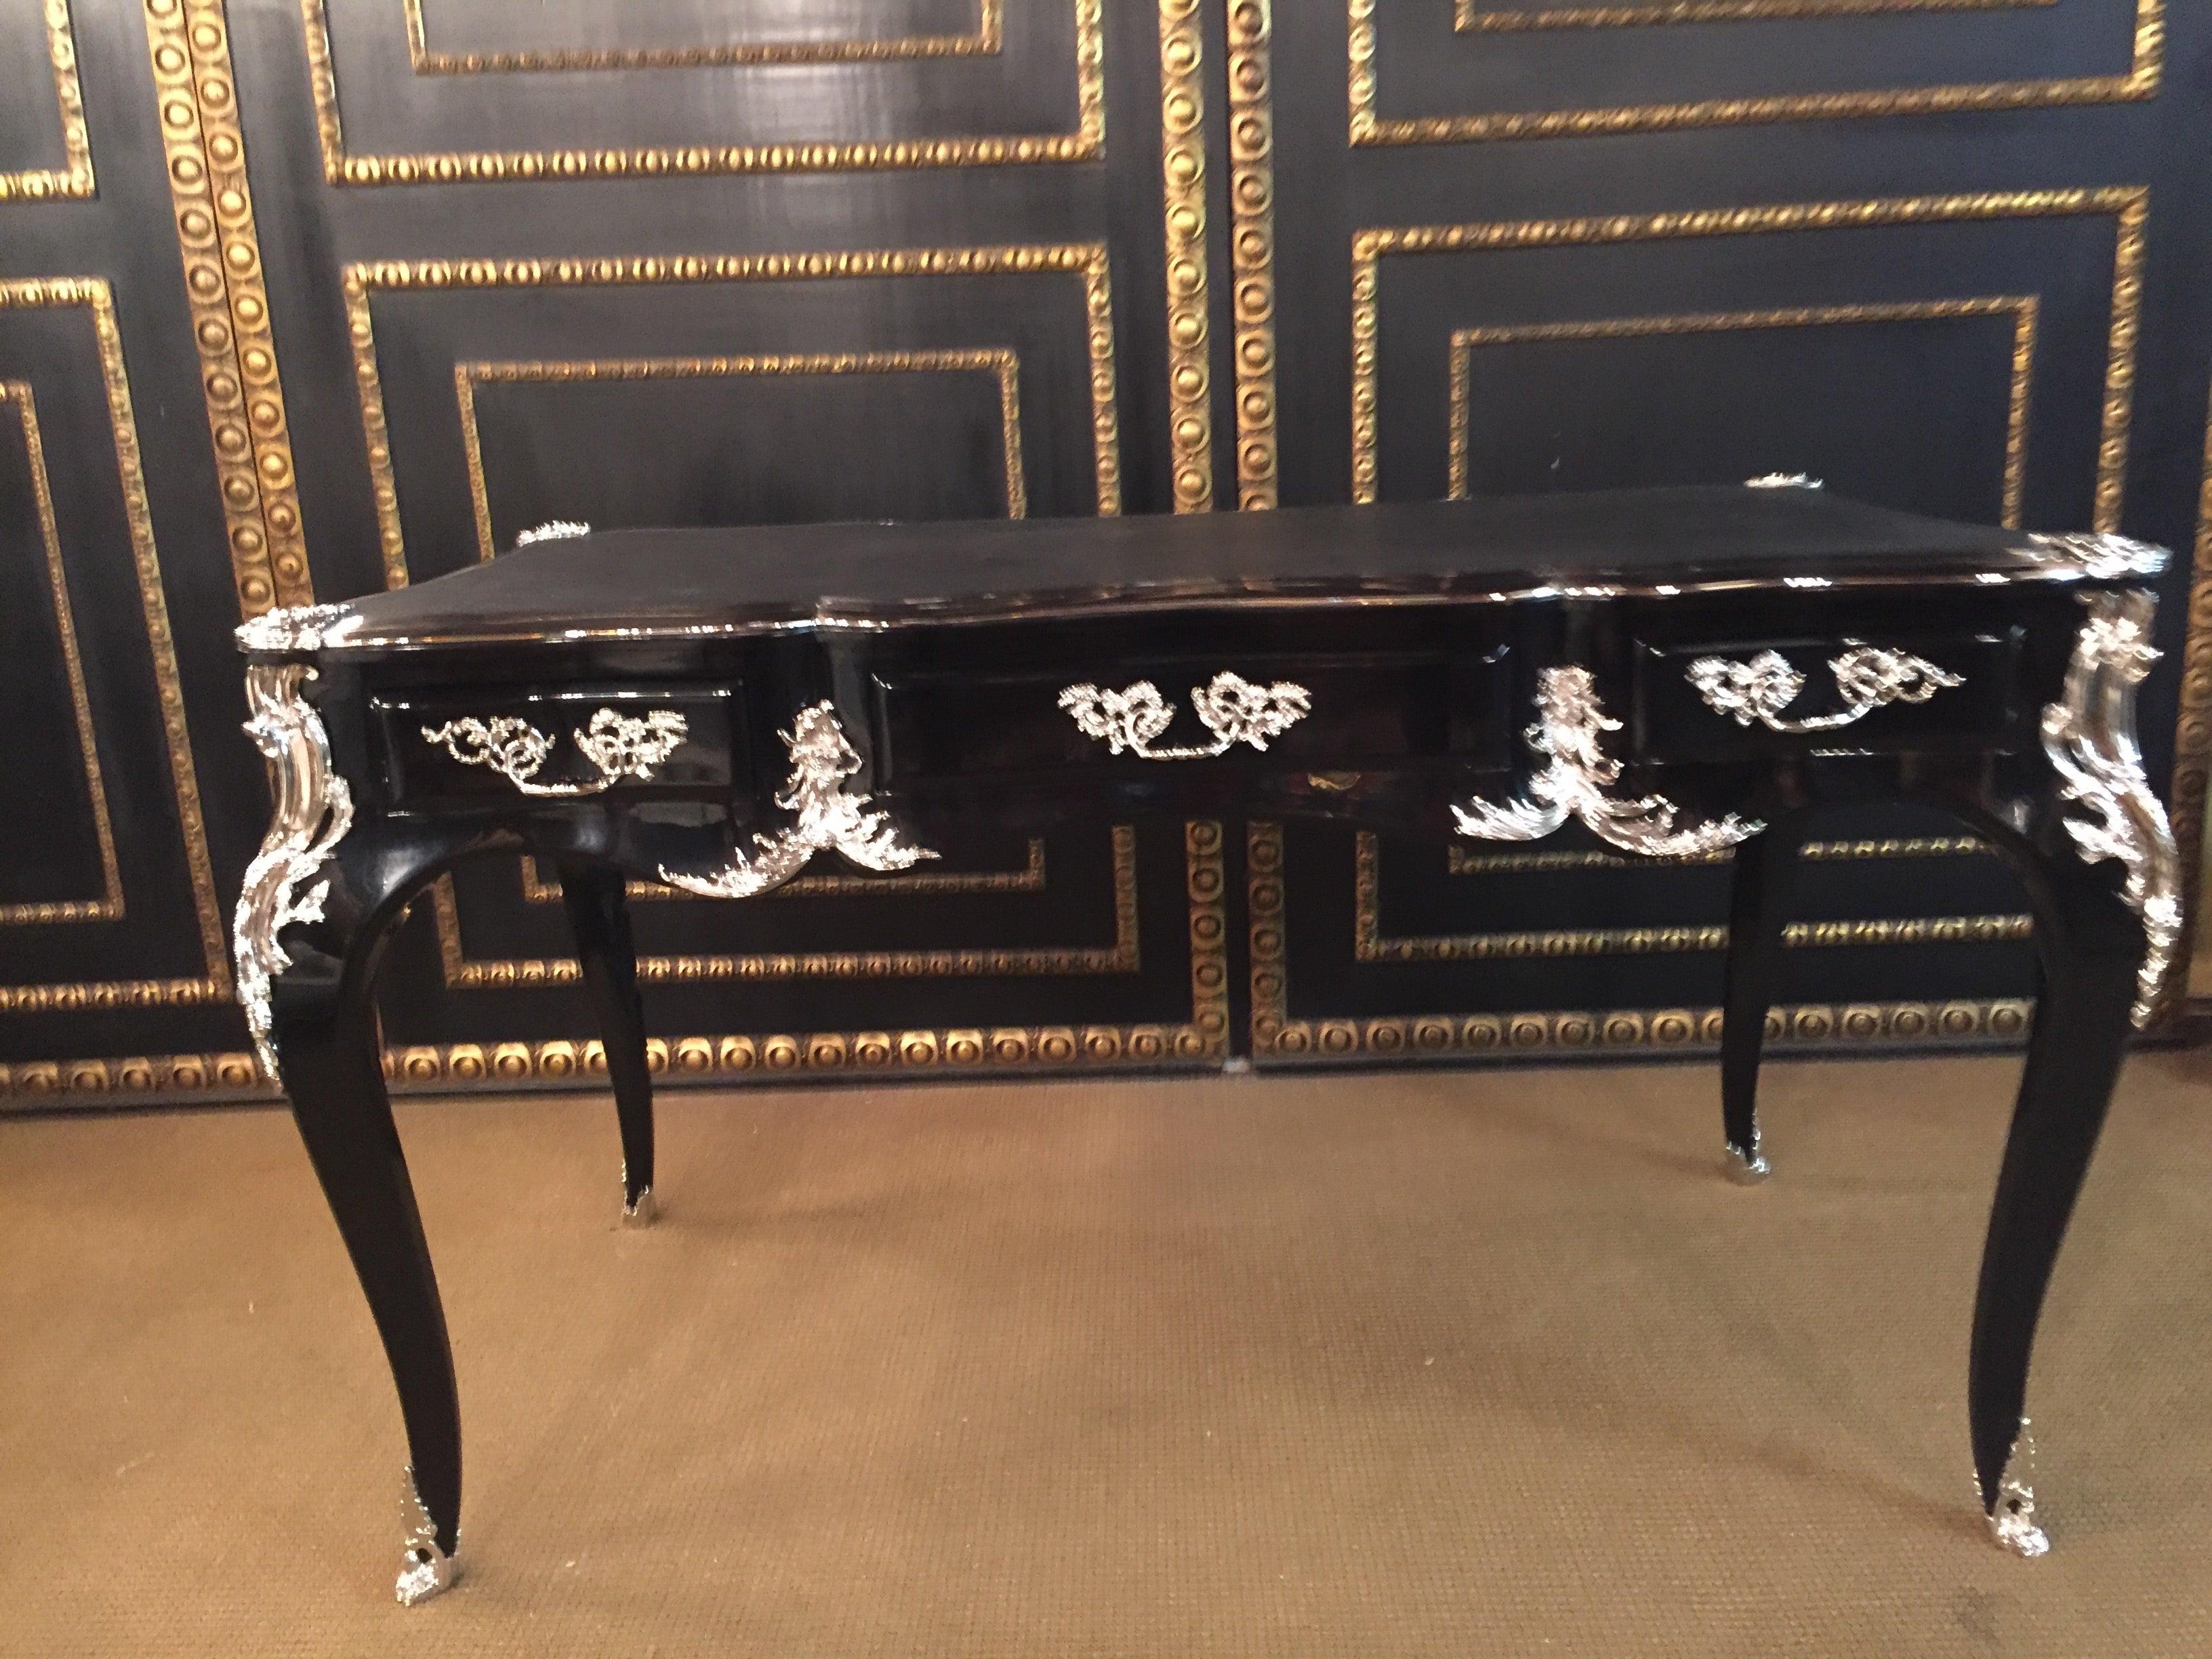 Bureau plat Schreibtisch im Stil von Louis XV Stil, versilberte Bronzebeschläge. Klavierlack schwarz auf massivem Buchenholz. Stark gewölbter, vierseitig passiv gekrümmter Dreibeinrahmen mit breiter Kniestütze auf elegant geschwungenen Quadraten in